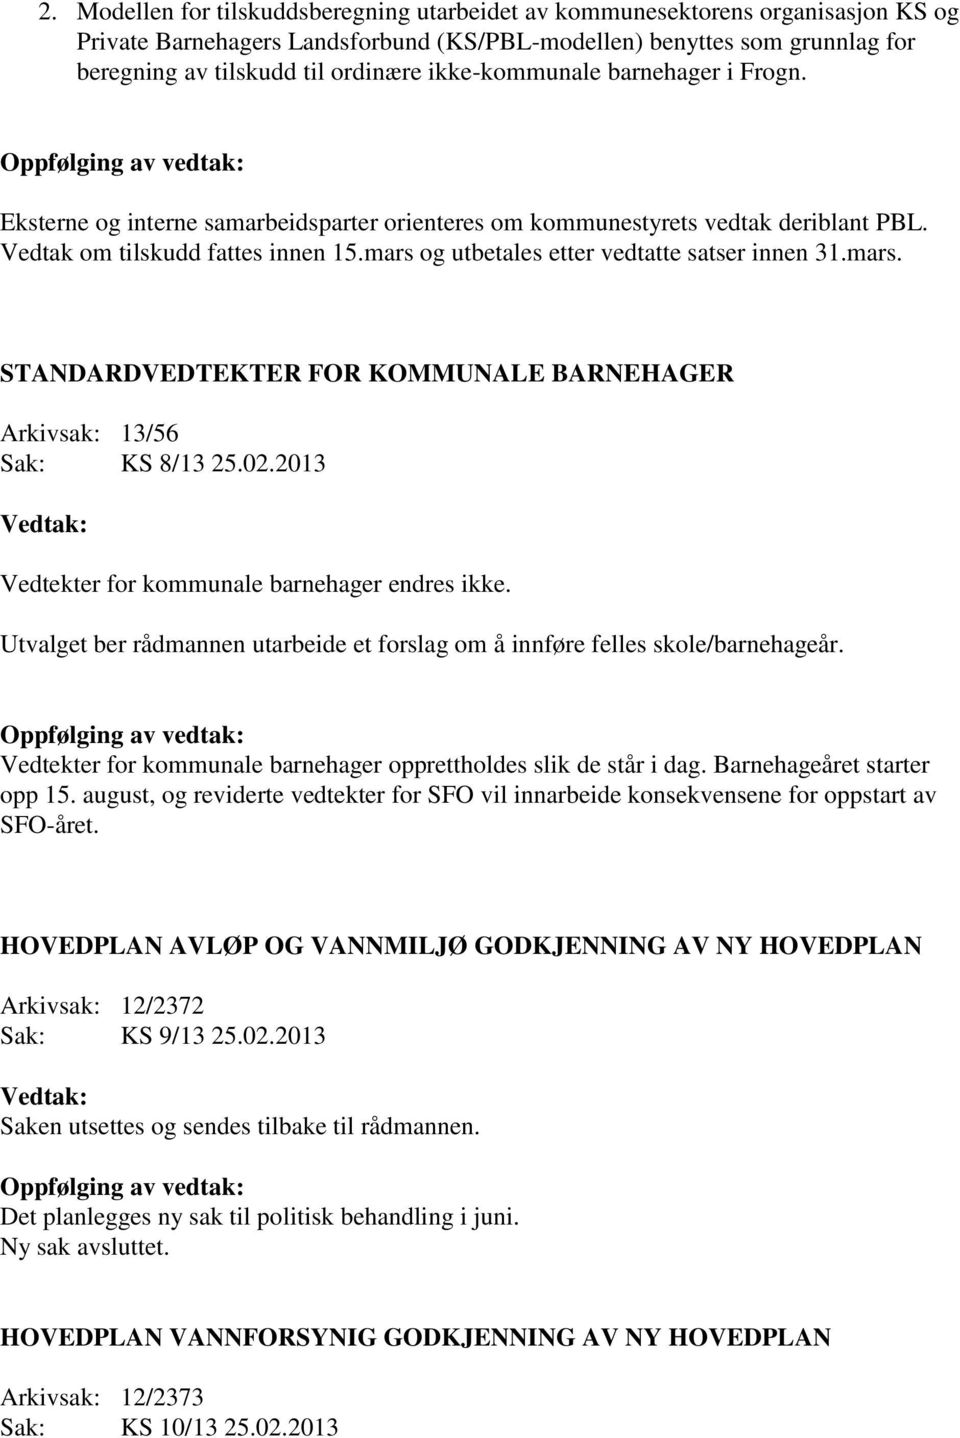 mars og utbetales etter vedtatte satser innen 31.mars. STANDARDVEDTEKTER FOR KOMMUNALE BARNEHAGER Arkivsak: 13/56 Sak: KS 8/13 25.02.2013 Vedtekter for kommunale barnehager endres ikke.